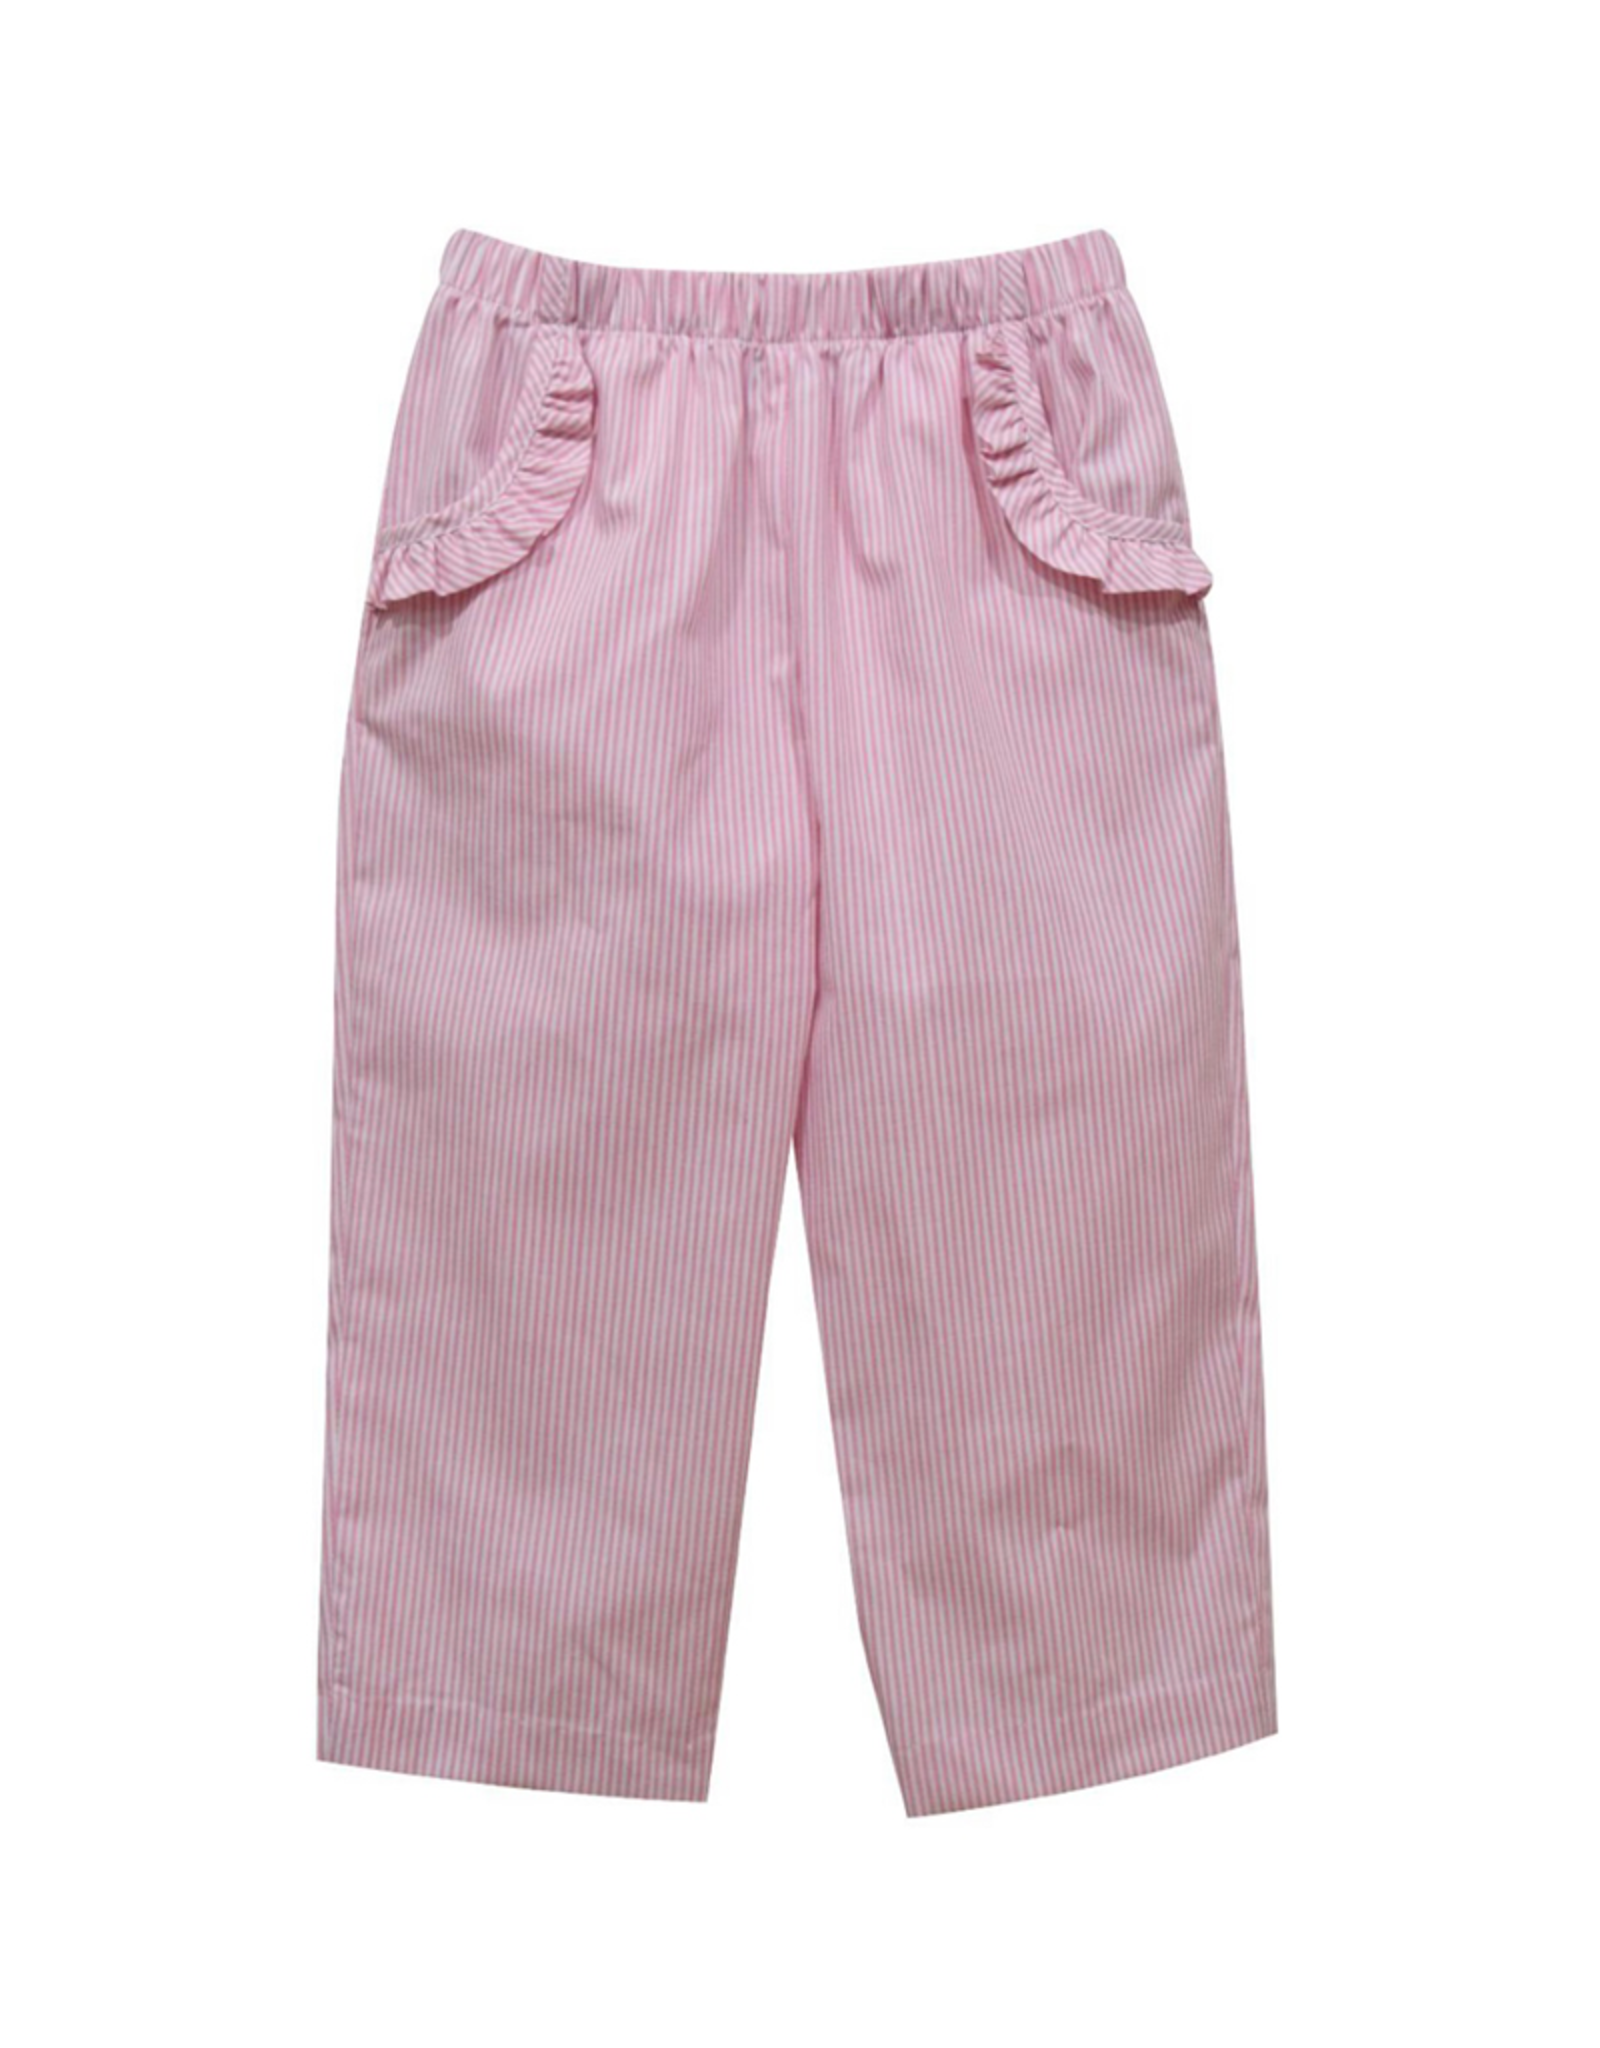 Vive la Fete VFF21 Ruffle Pocket Pant Light Pink Stripe